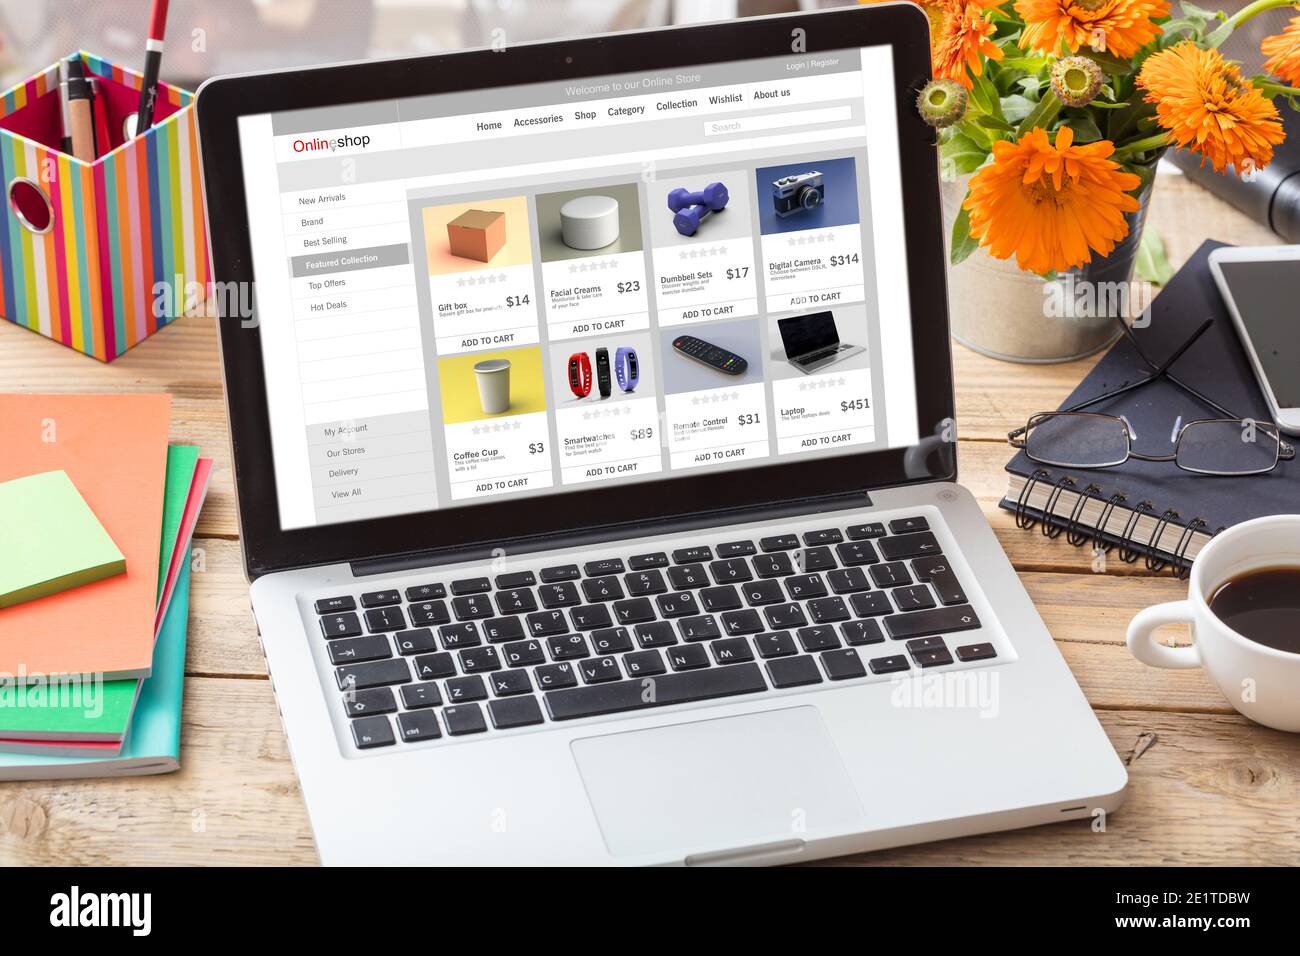 EShop, E-Commerce, digitale Marketing-Webseite auf einem Laptop-Bildschirm, Büroschreibtisch Hintergrund. Webseitenkonzept des Online-Shops, Stockfoto